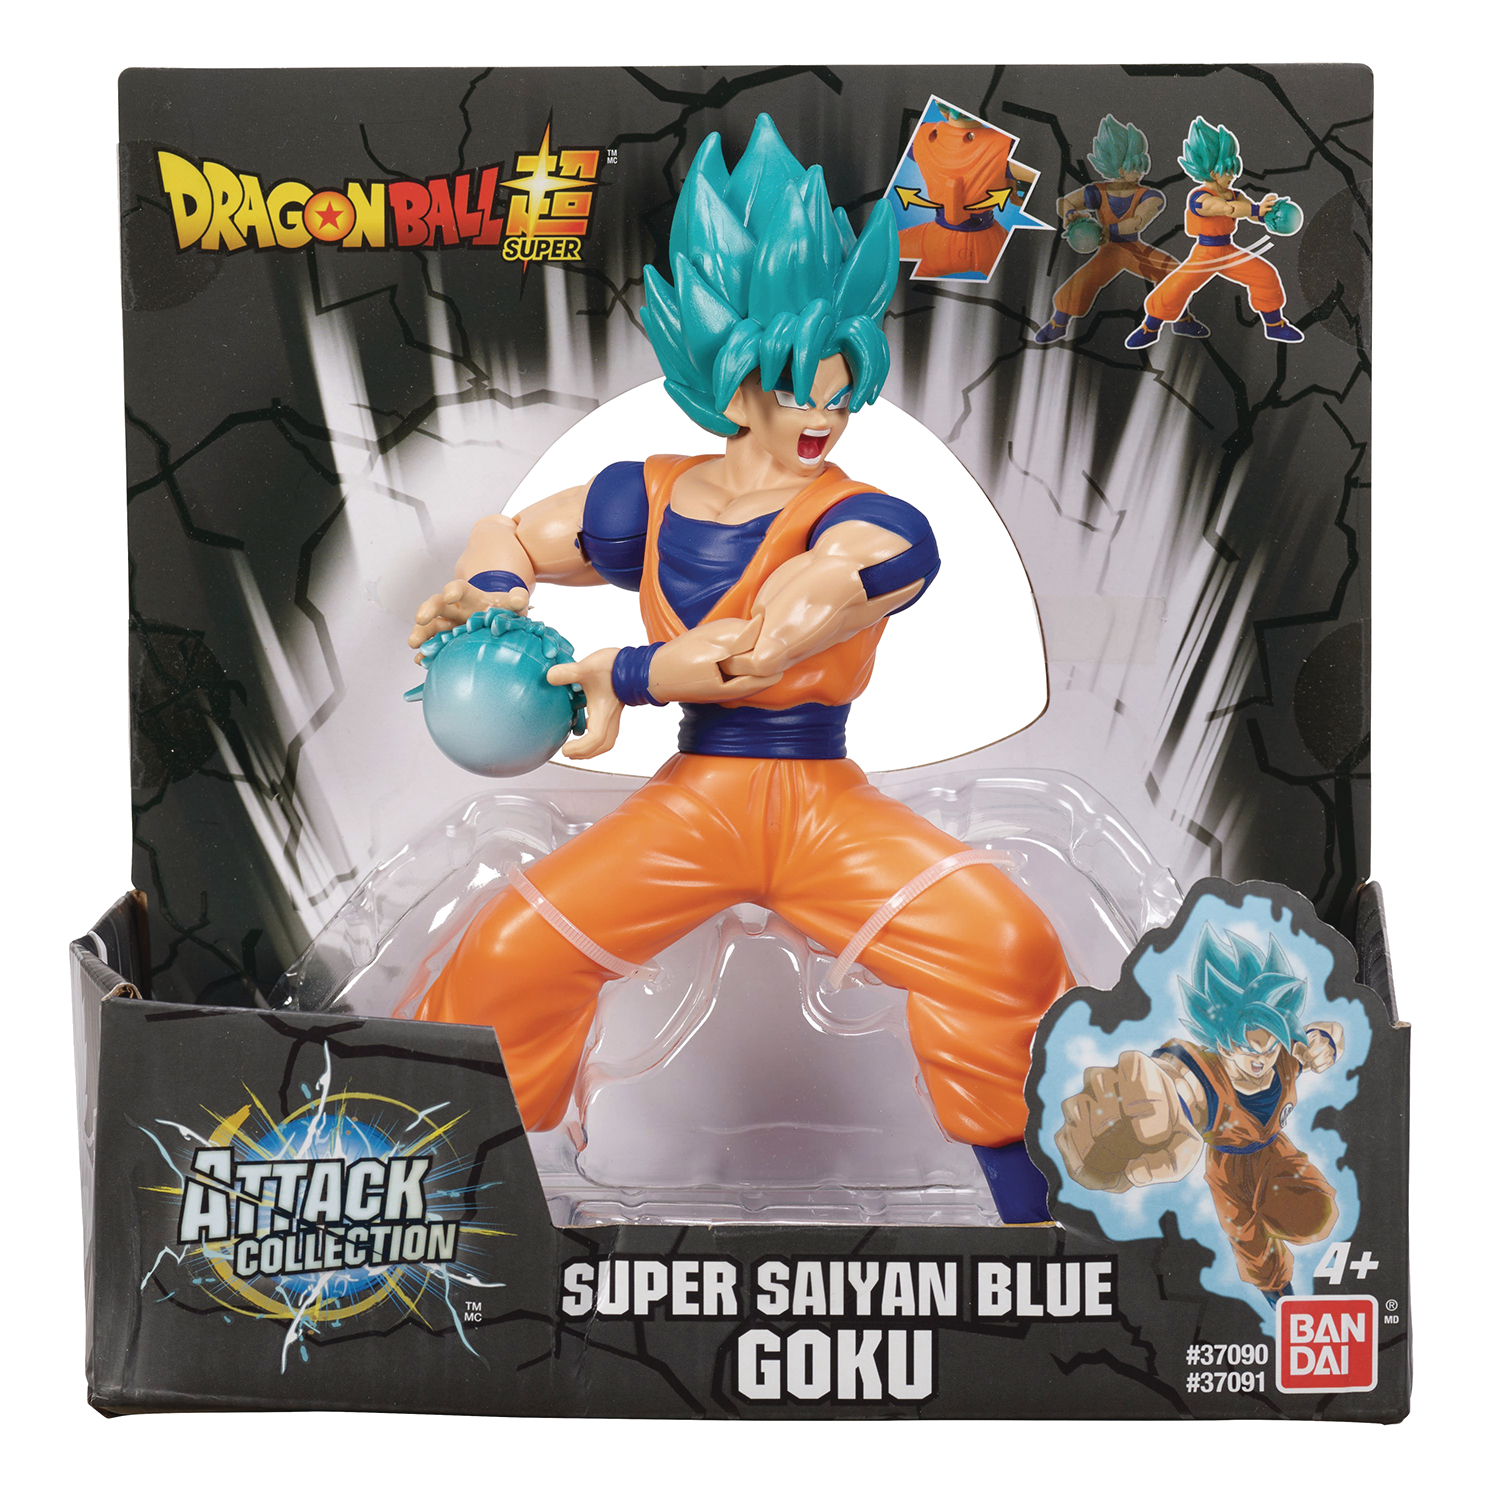 Goku Figures: Dragon Ball Z Goku Action Figures for Sale